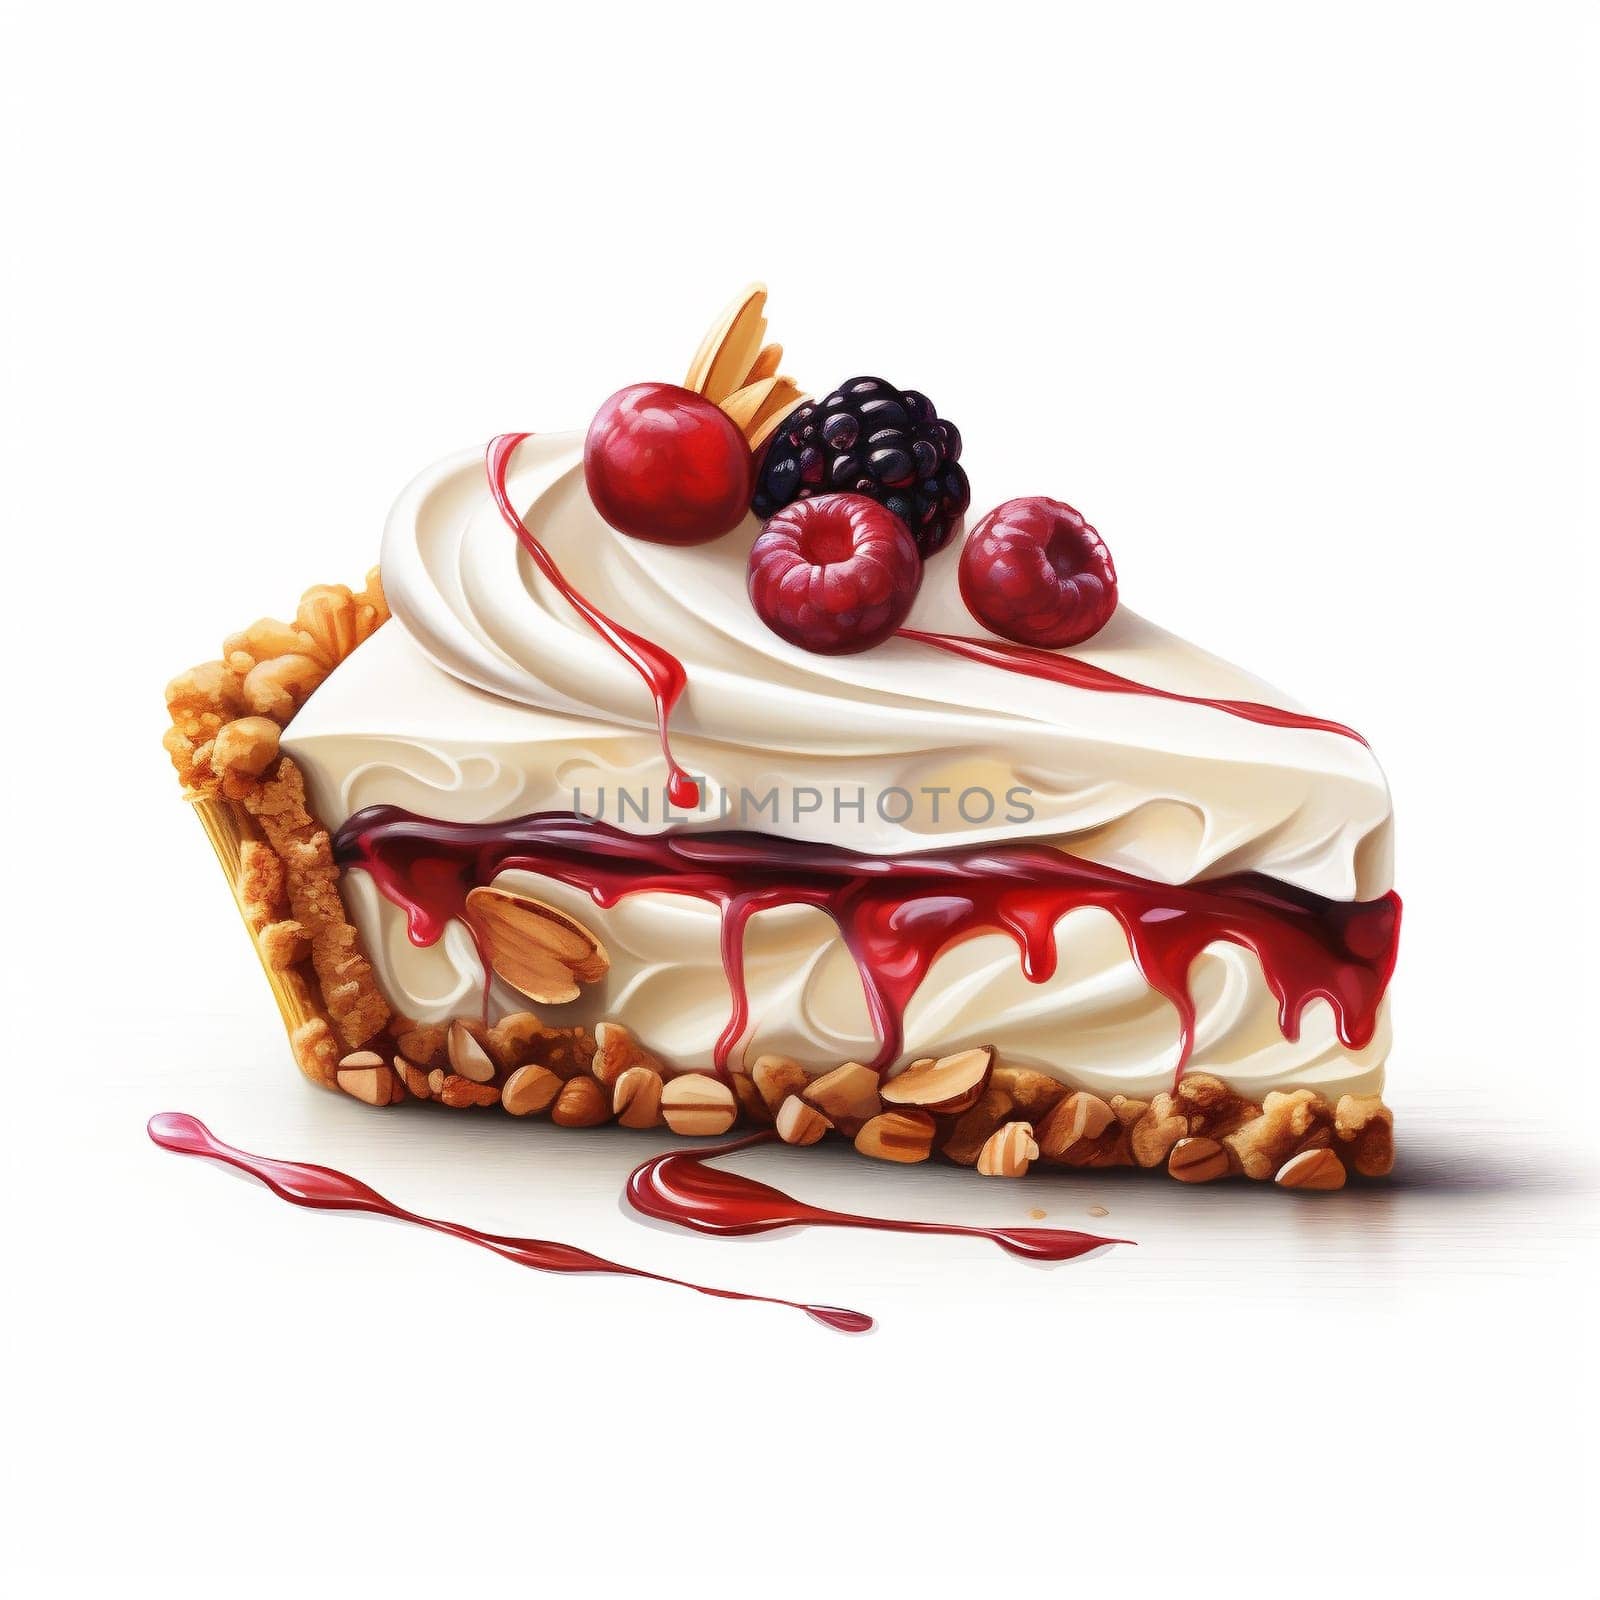 Illustration of Piece Tasty Fruit Pie on White Background. by Rina_Dozornaya